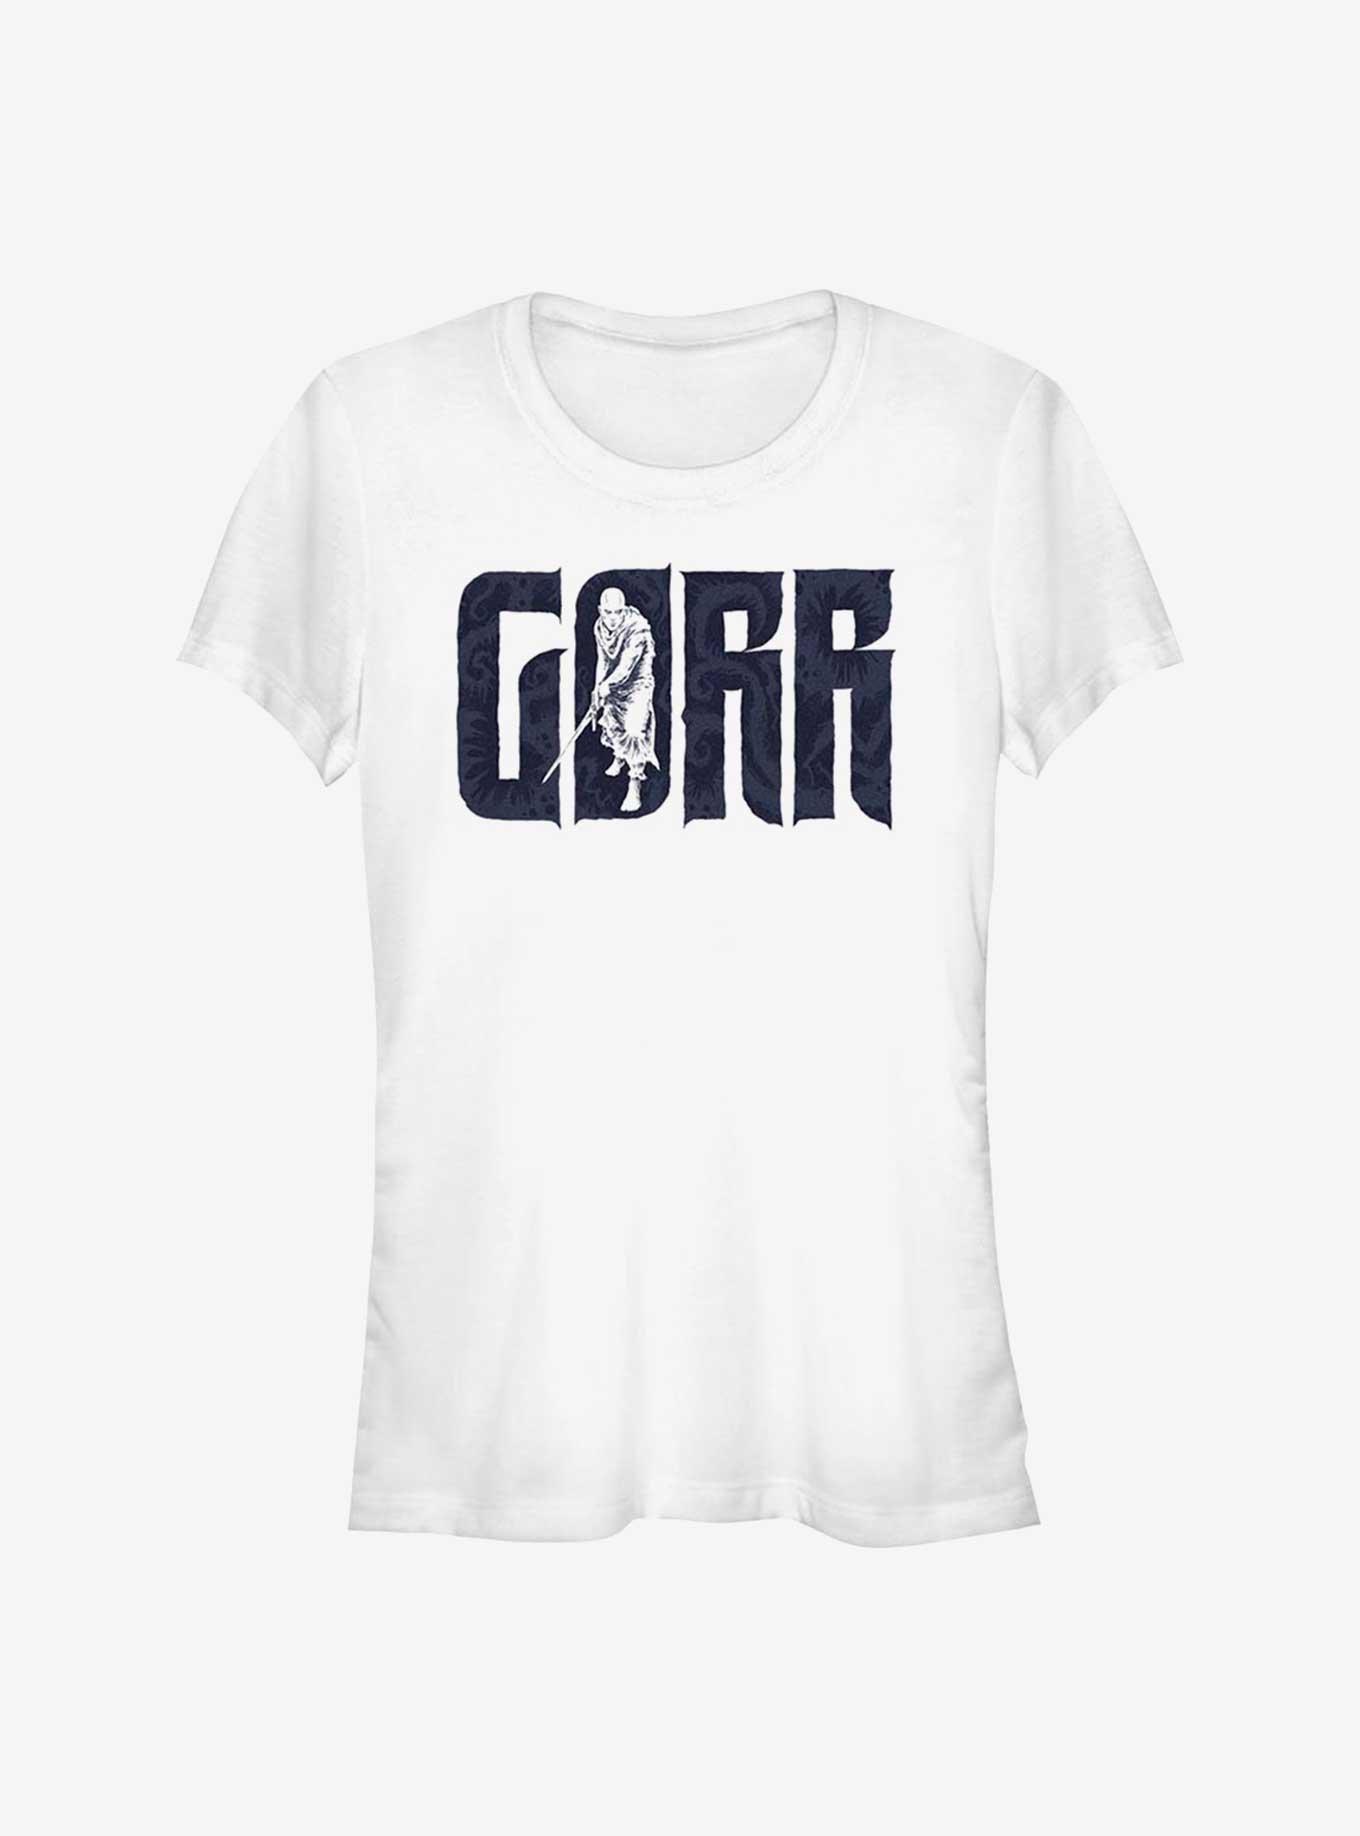 Marvel Thor: Love and Thunder Gorr Girls T-Shirt, WHITE, hi-res